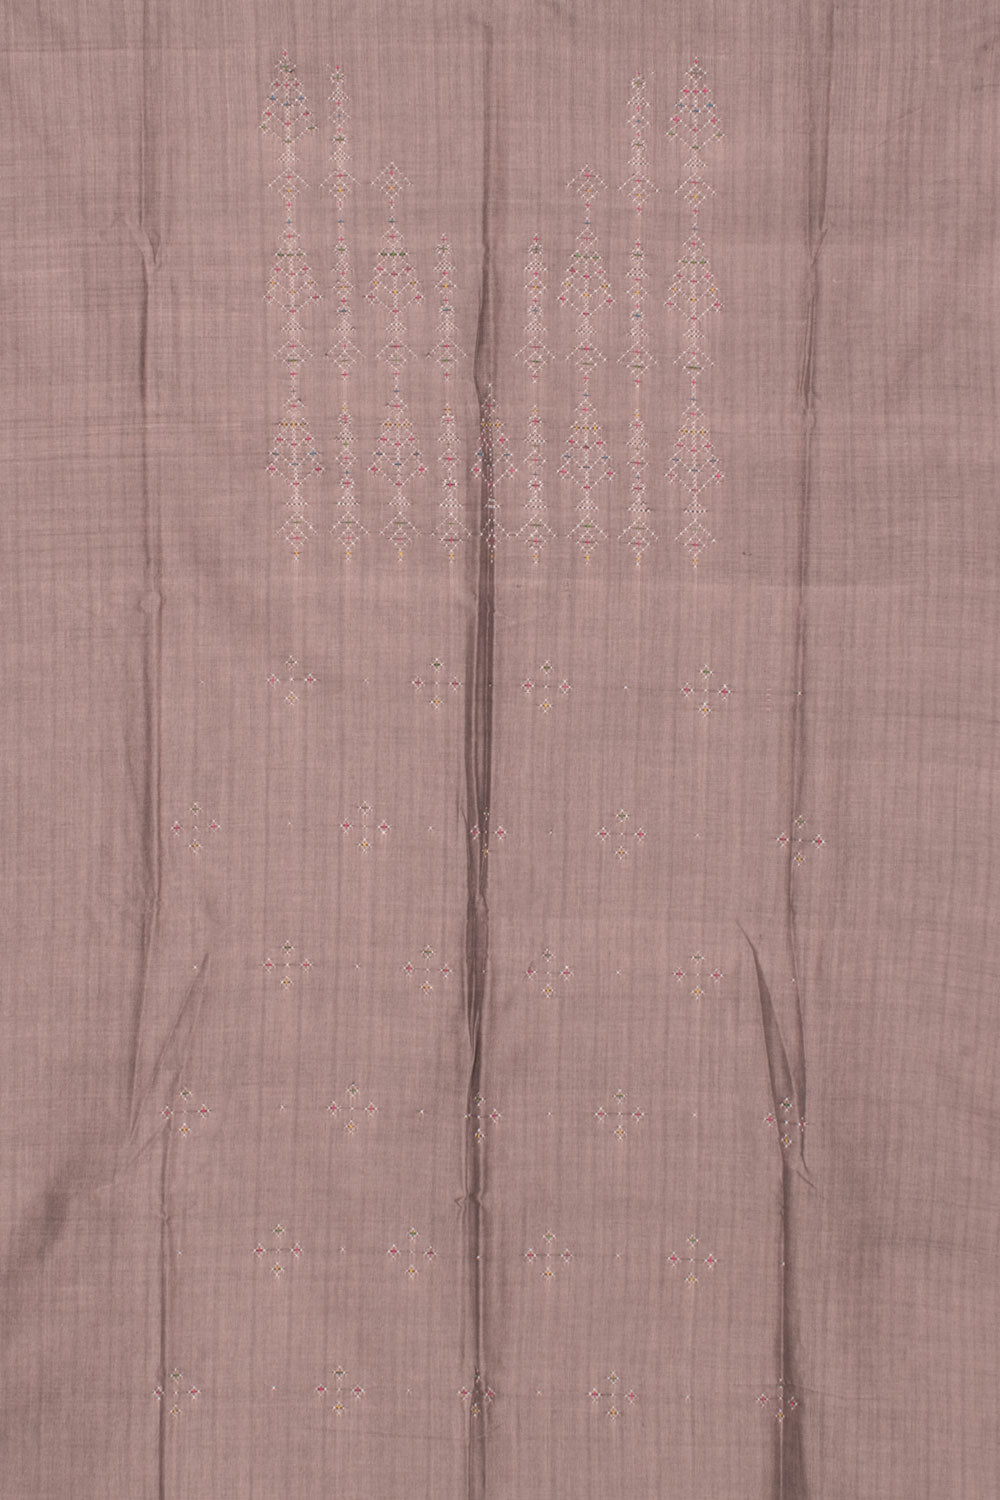 Tangaliya Cotton 2-Piece Salwar Suit Material 10058598